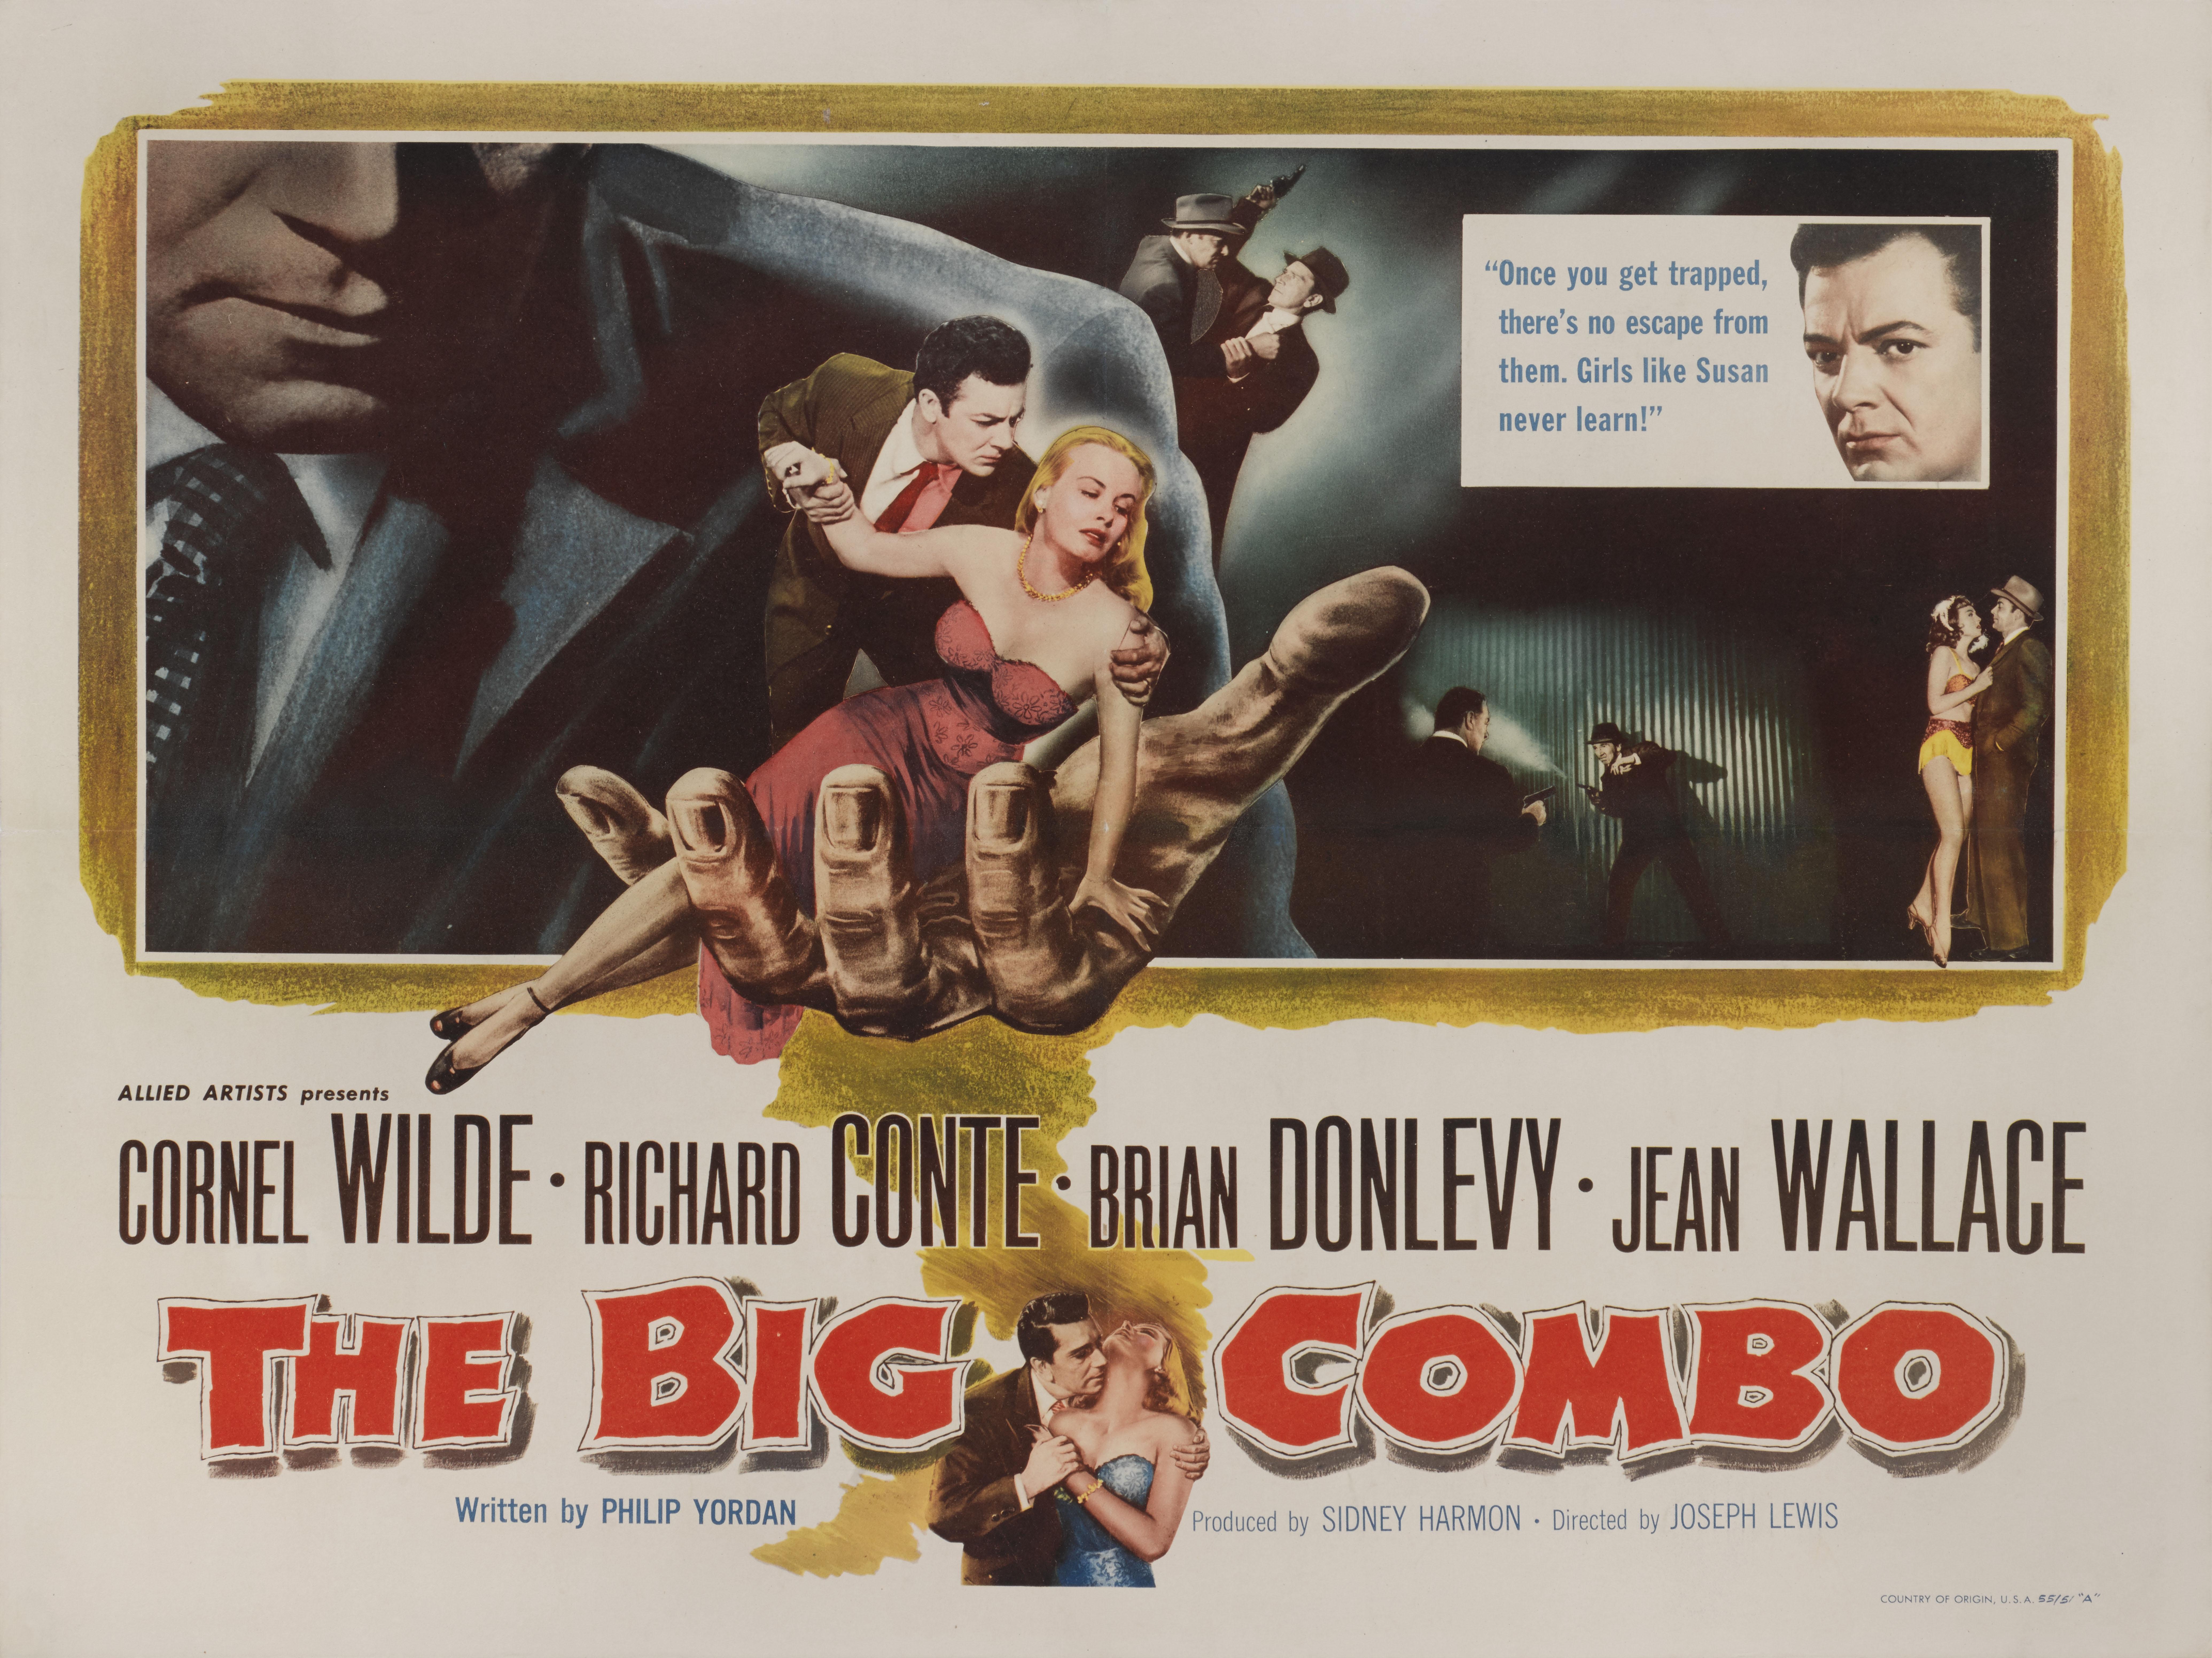 Originales B-Filmplakat im US-Stil für den Film Noir von 1955 mit Cornel Wilde, Richard Conte und Jean Wallace in den Hauptrollen. Die Regie bei diesem Film führte Joseph H. Lewis.
Dieses Poster ist ungefaltet und mit Schutzpapier versehen. Es wird